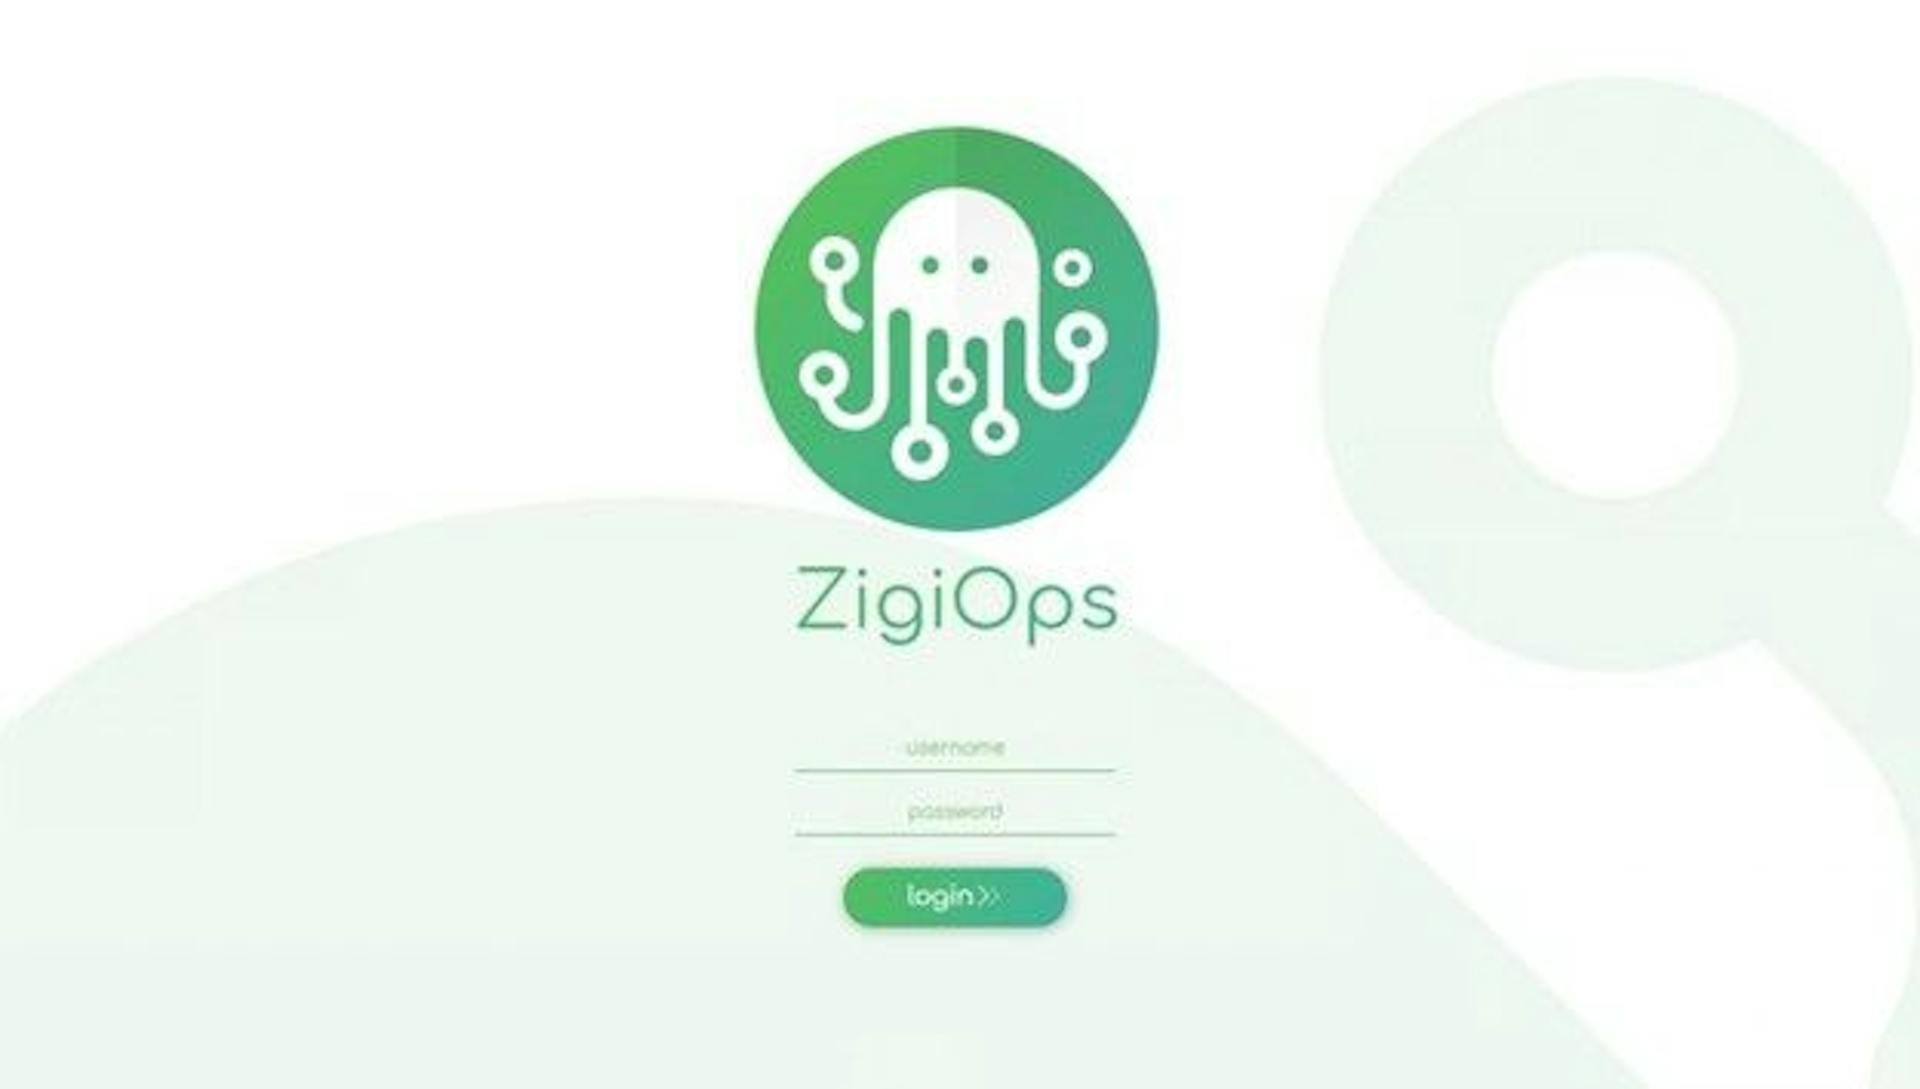 La pantalla de inicio de sesión de ZigiOps